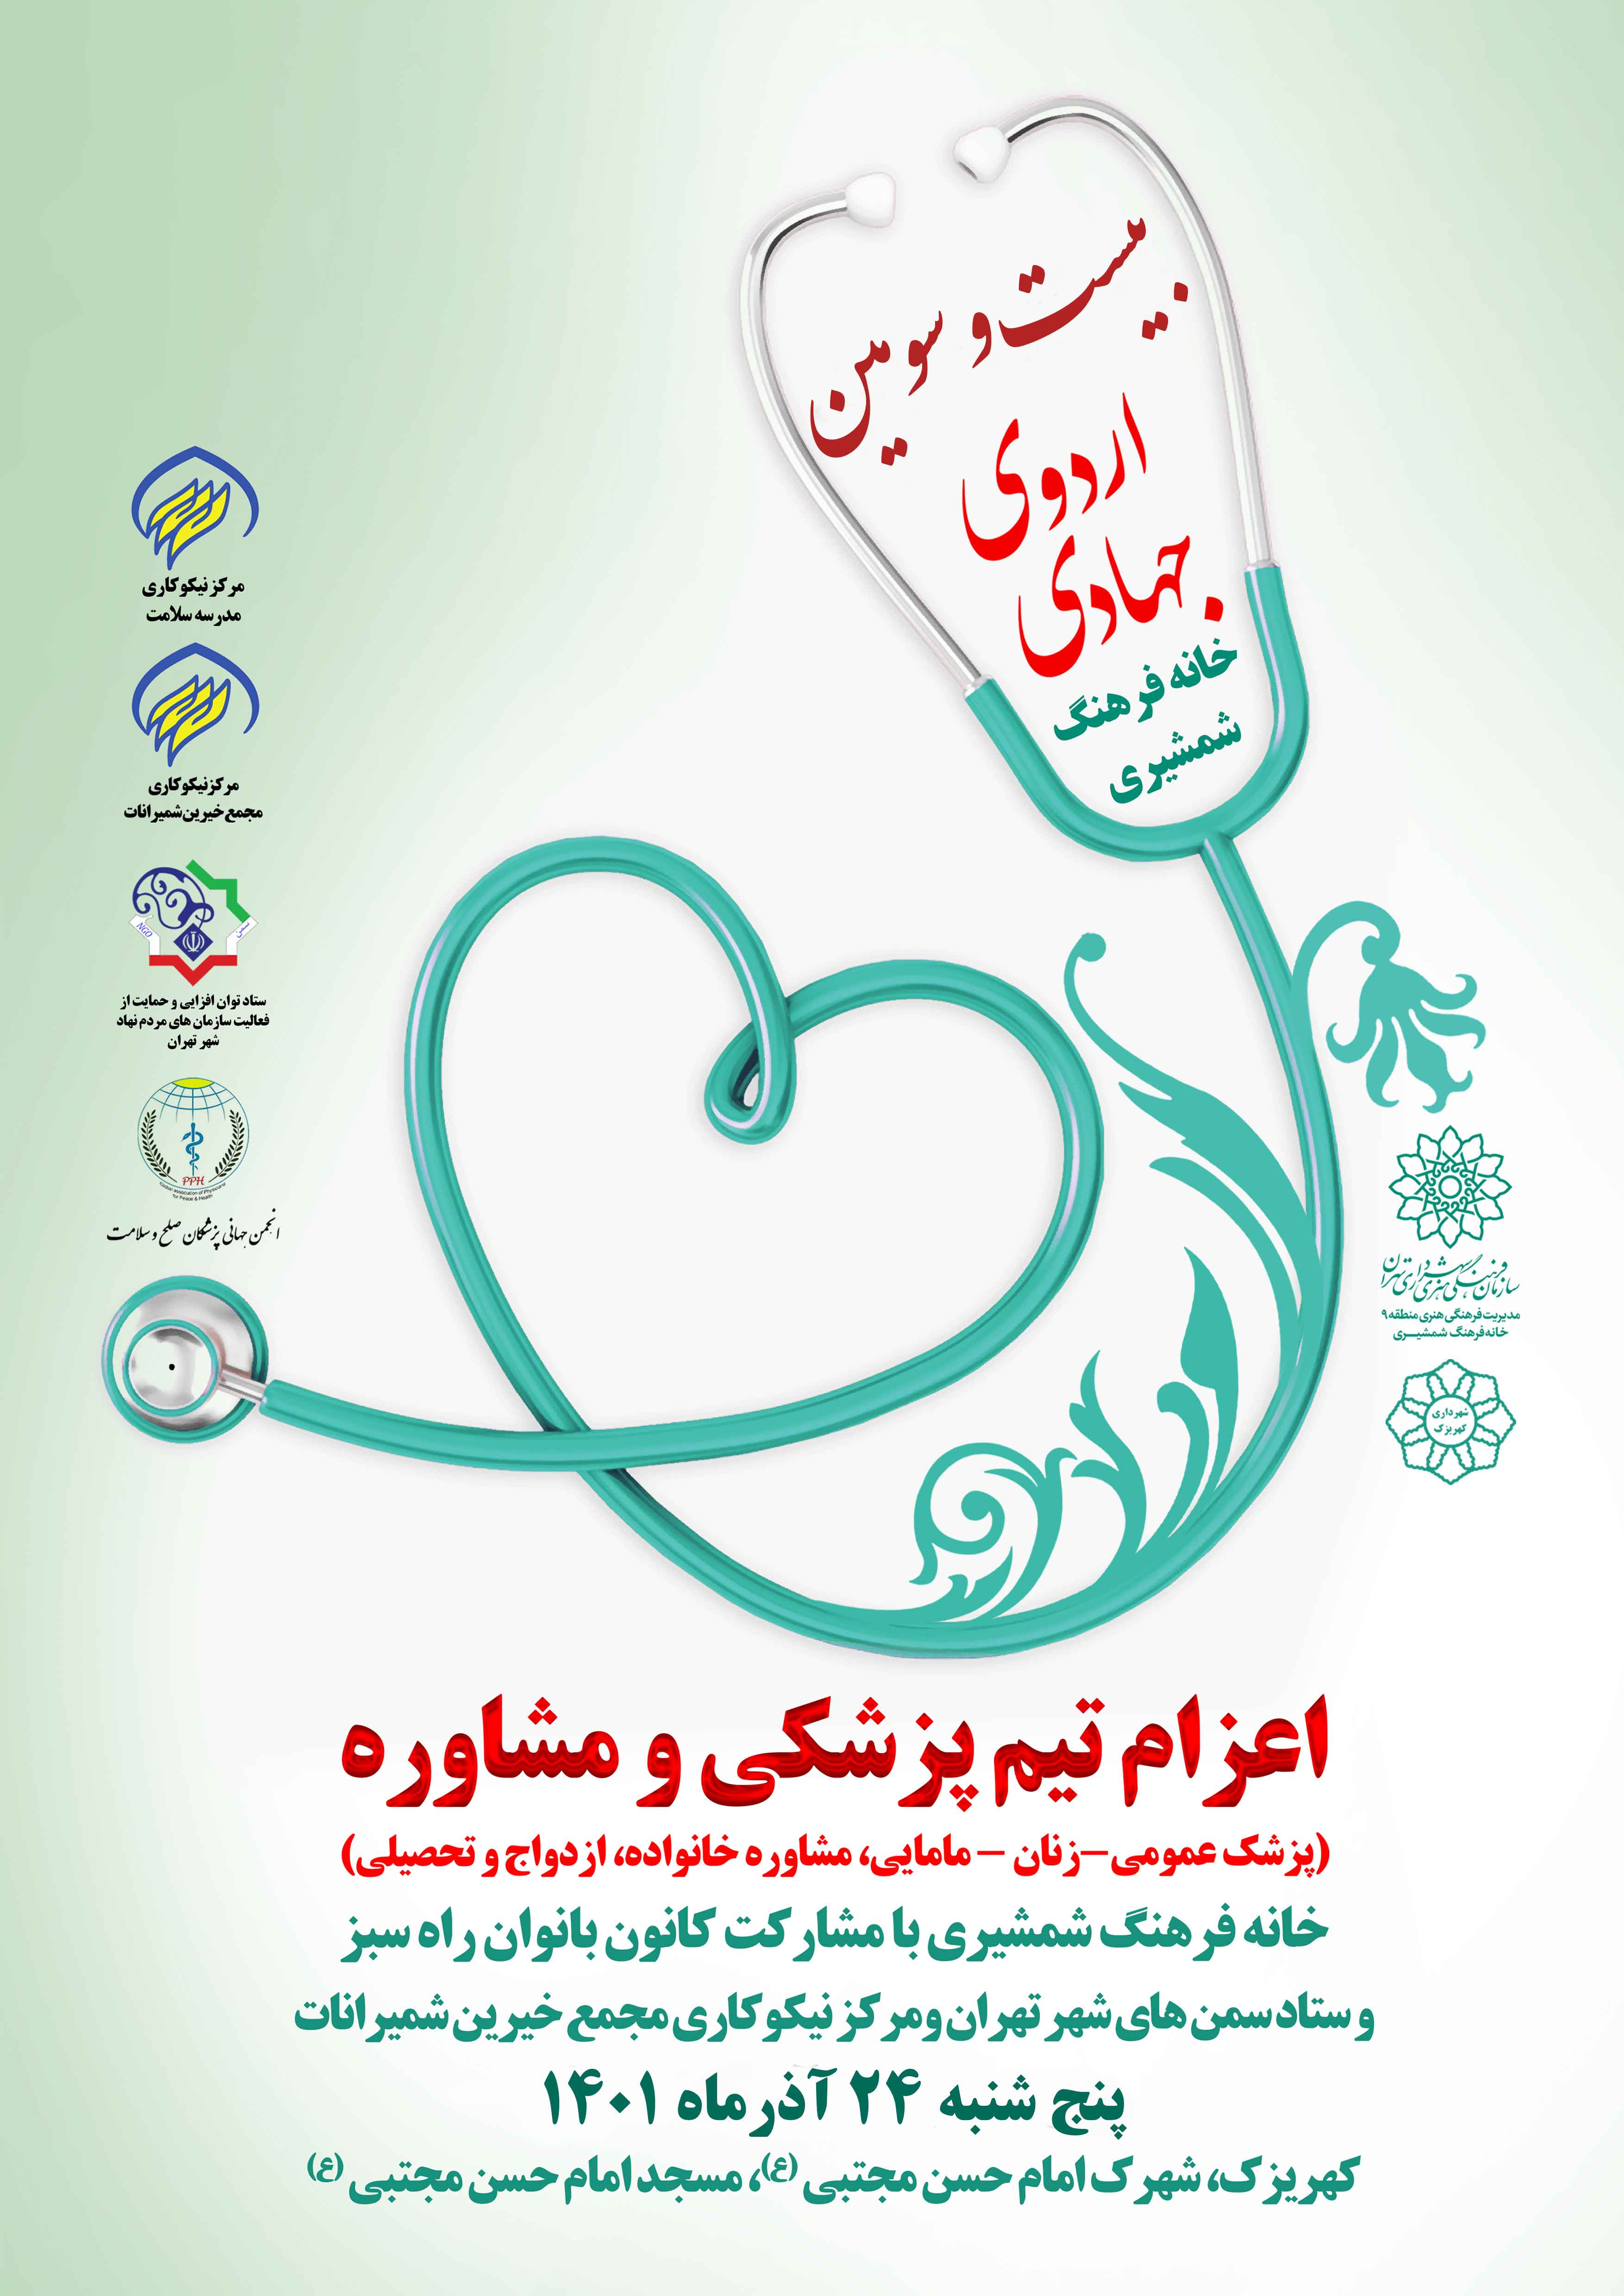 بیست و سومین اردوی جهادی ، اعزام تیم پزشکی به کهریزک